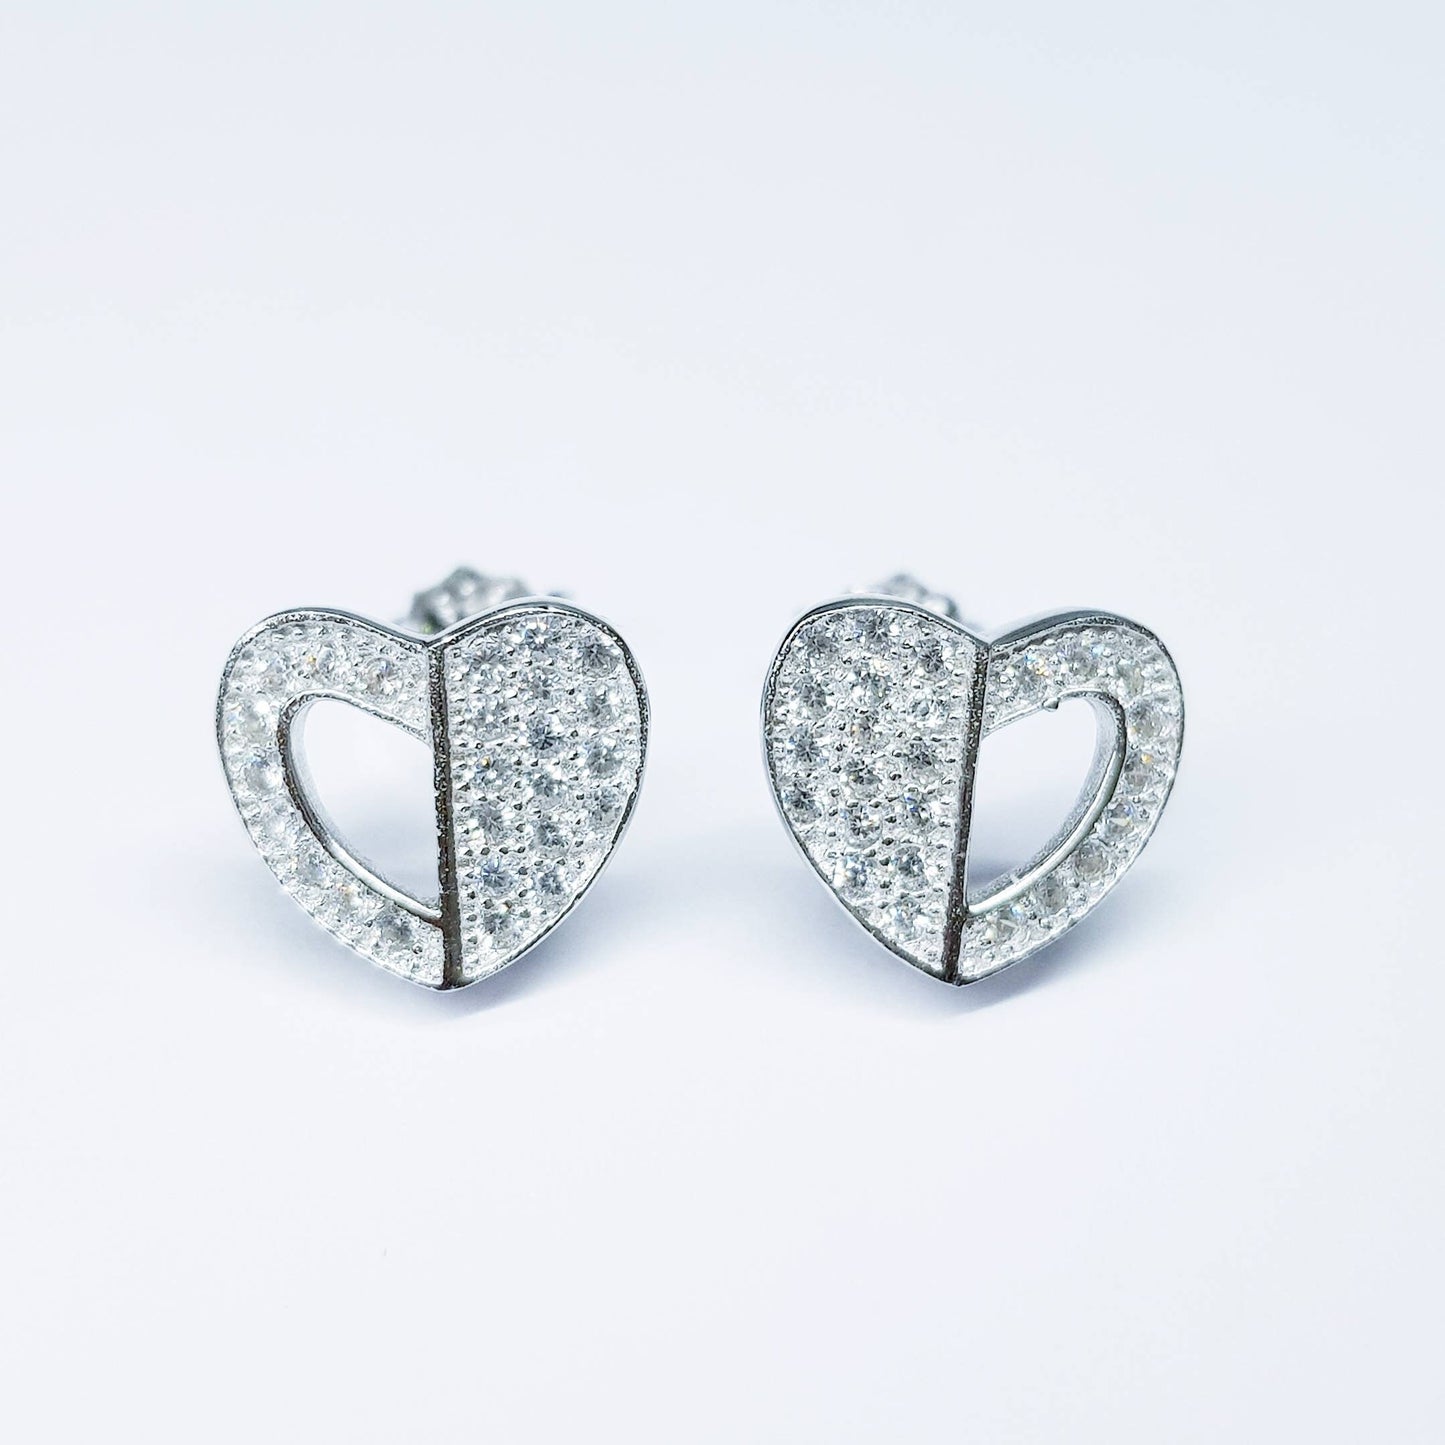 Cute Sterling silver heart shaped stud earrings, second hole heart stud earrings with cz